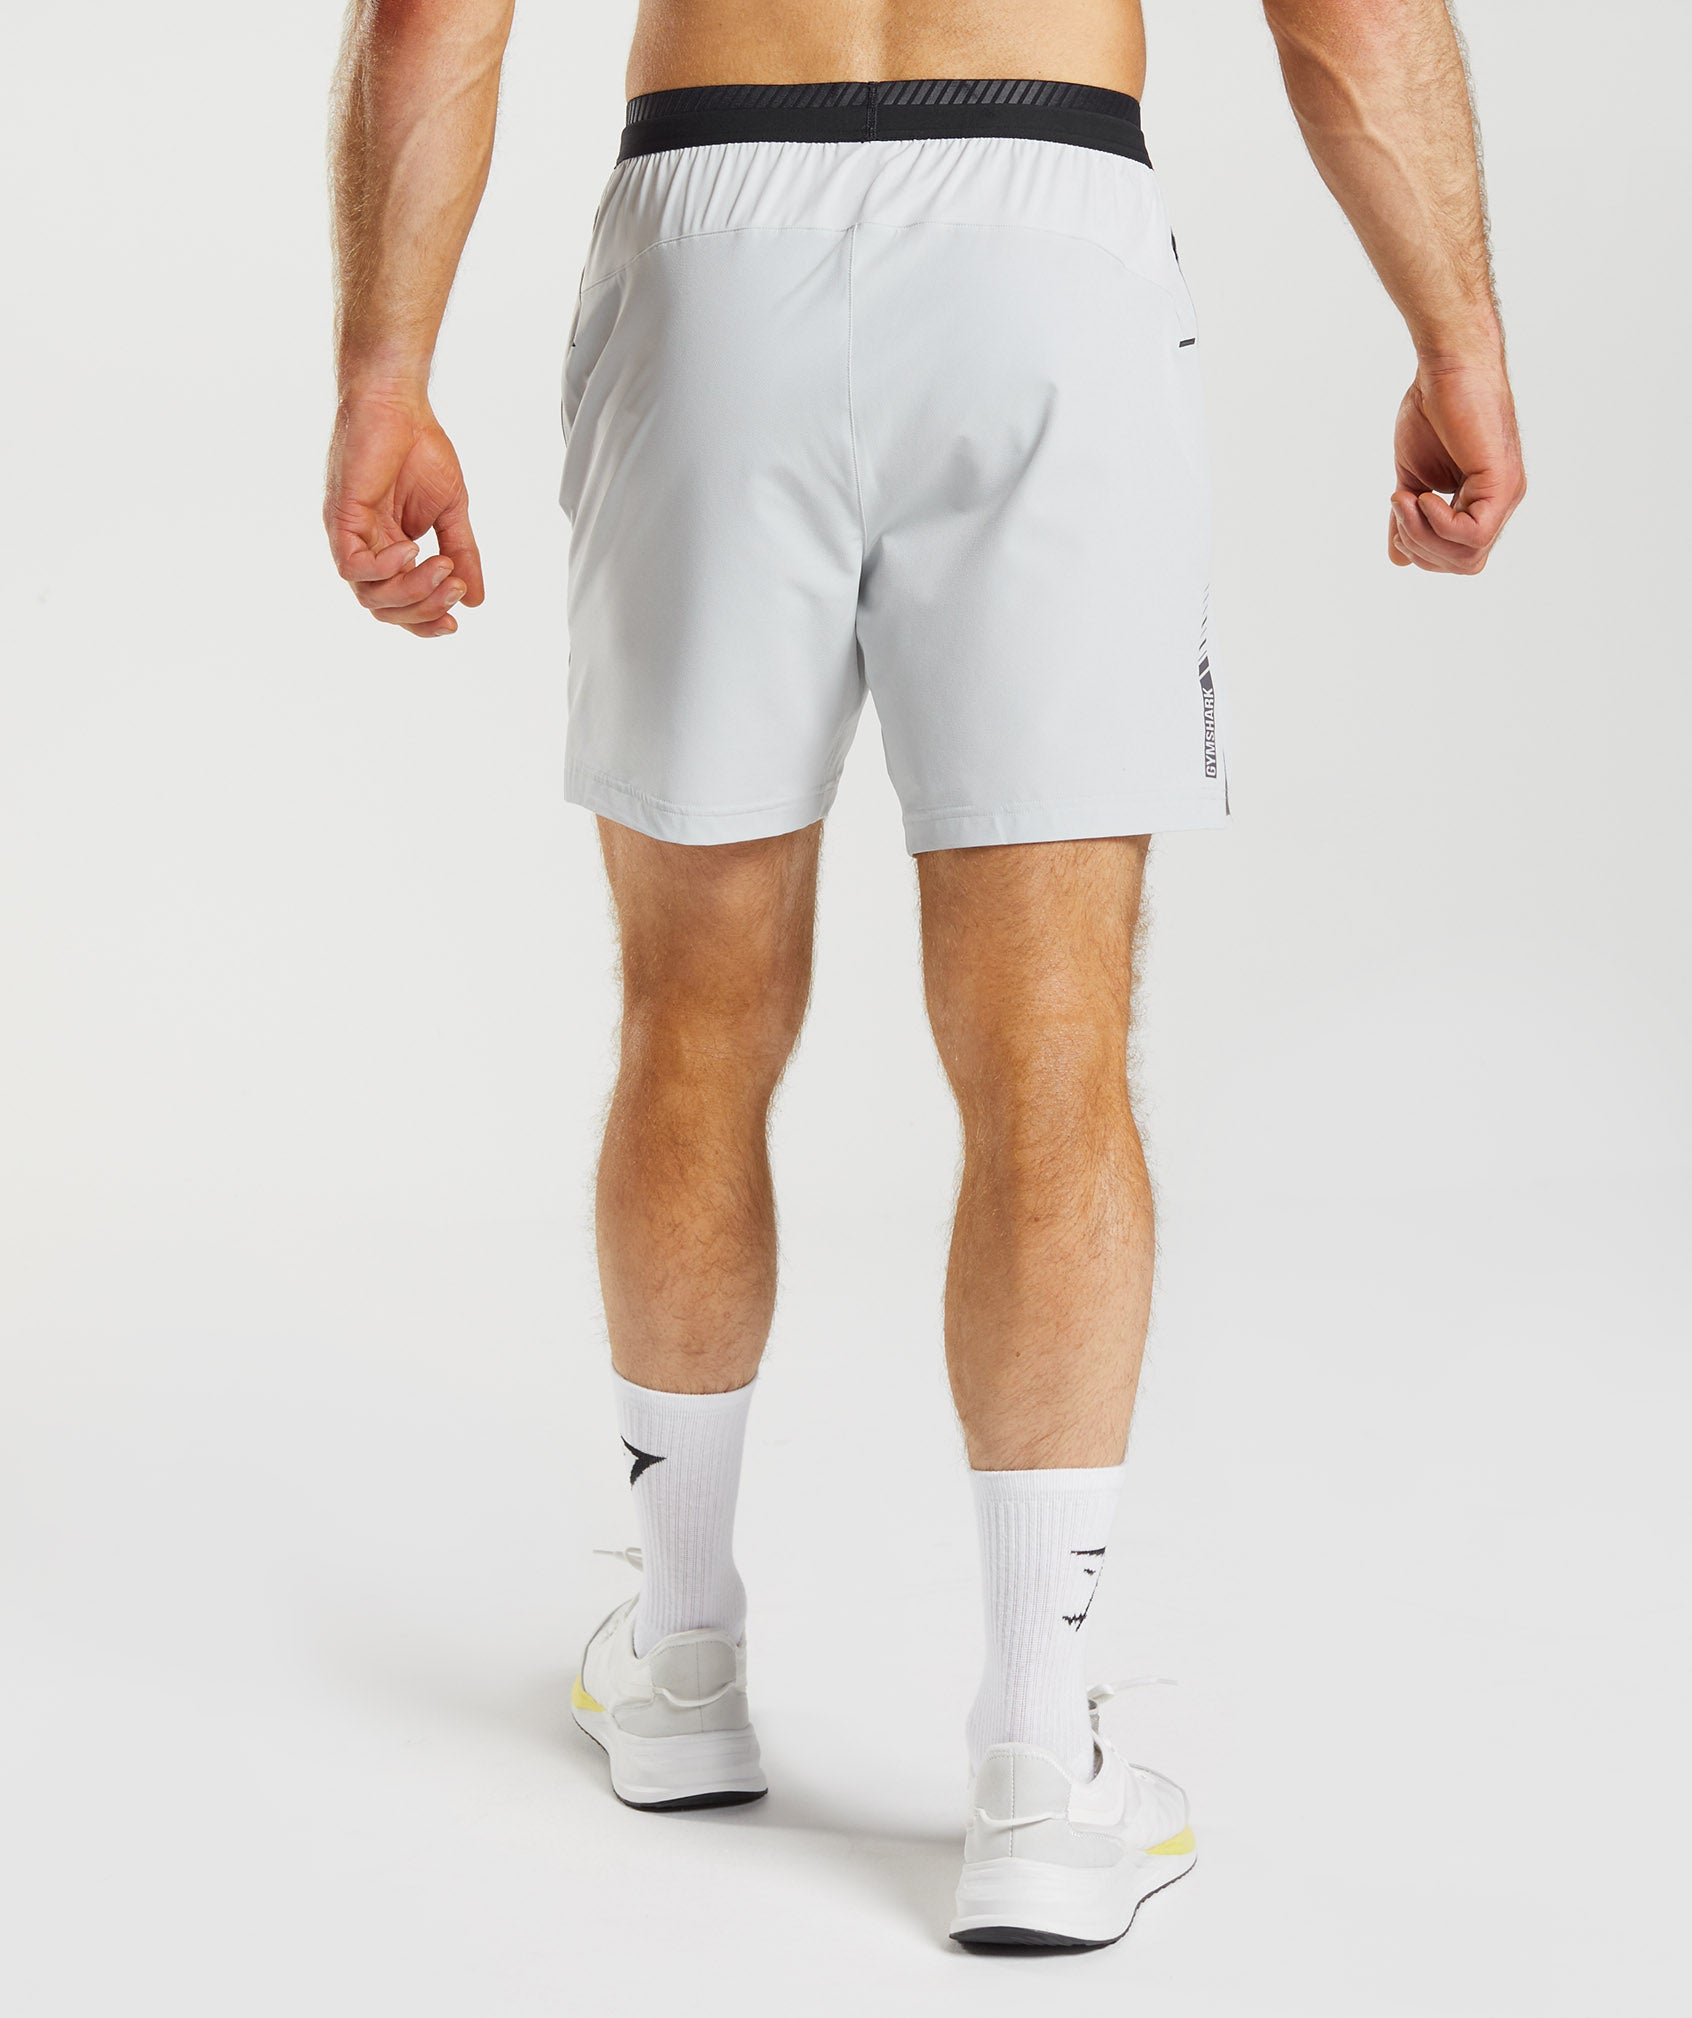 Apex 7 Hybrid Shorts